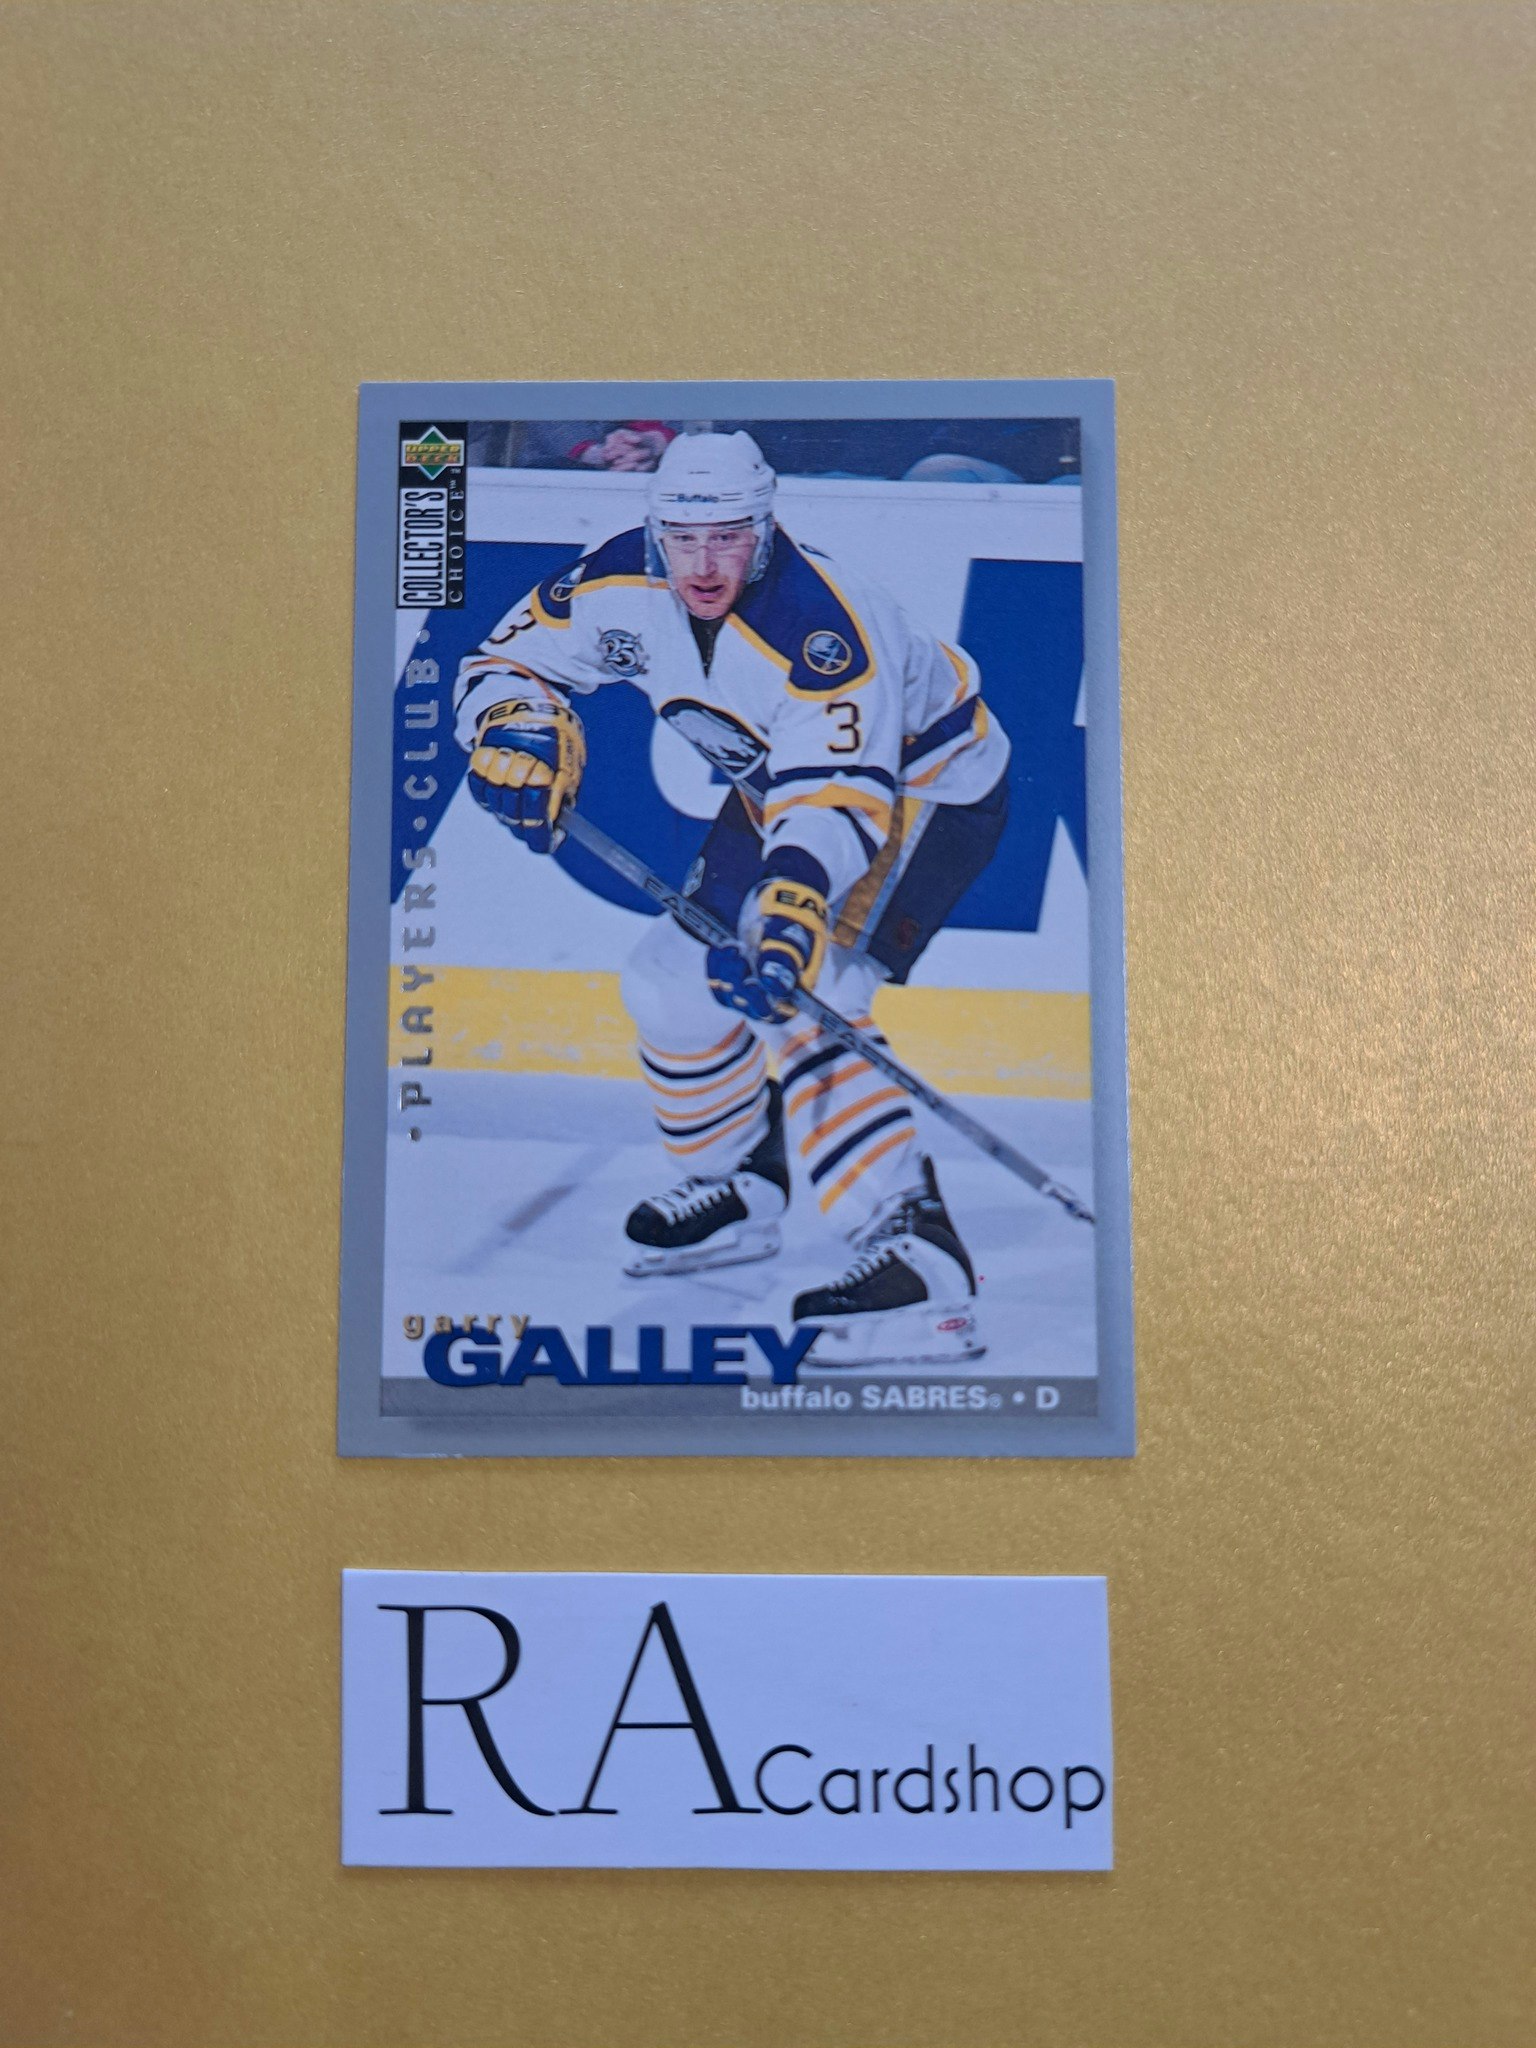 Garry Galley 95-96 Upper Deck Choice #73 NHL Hockey